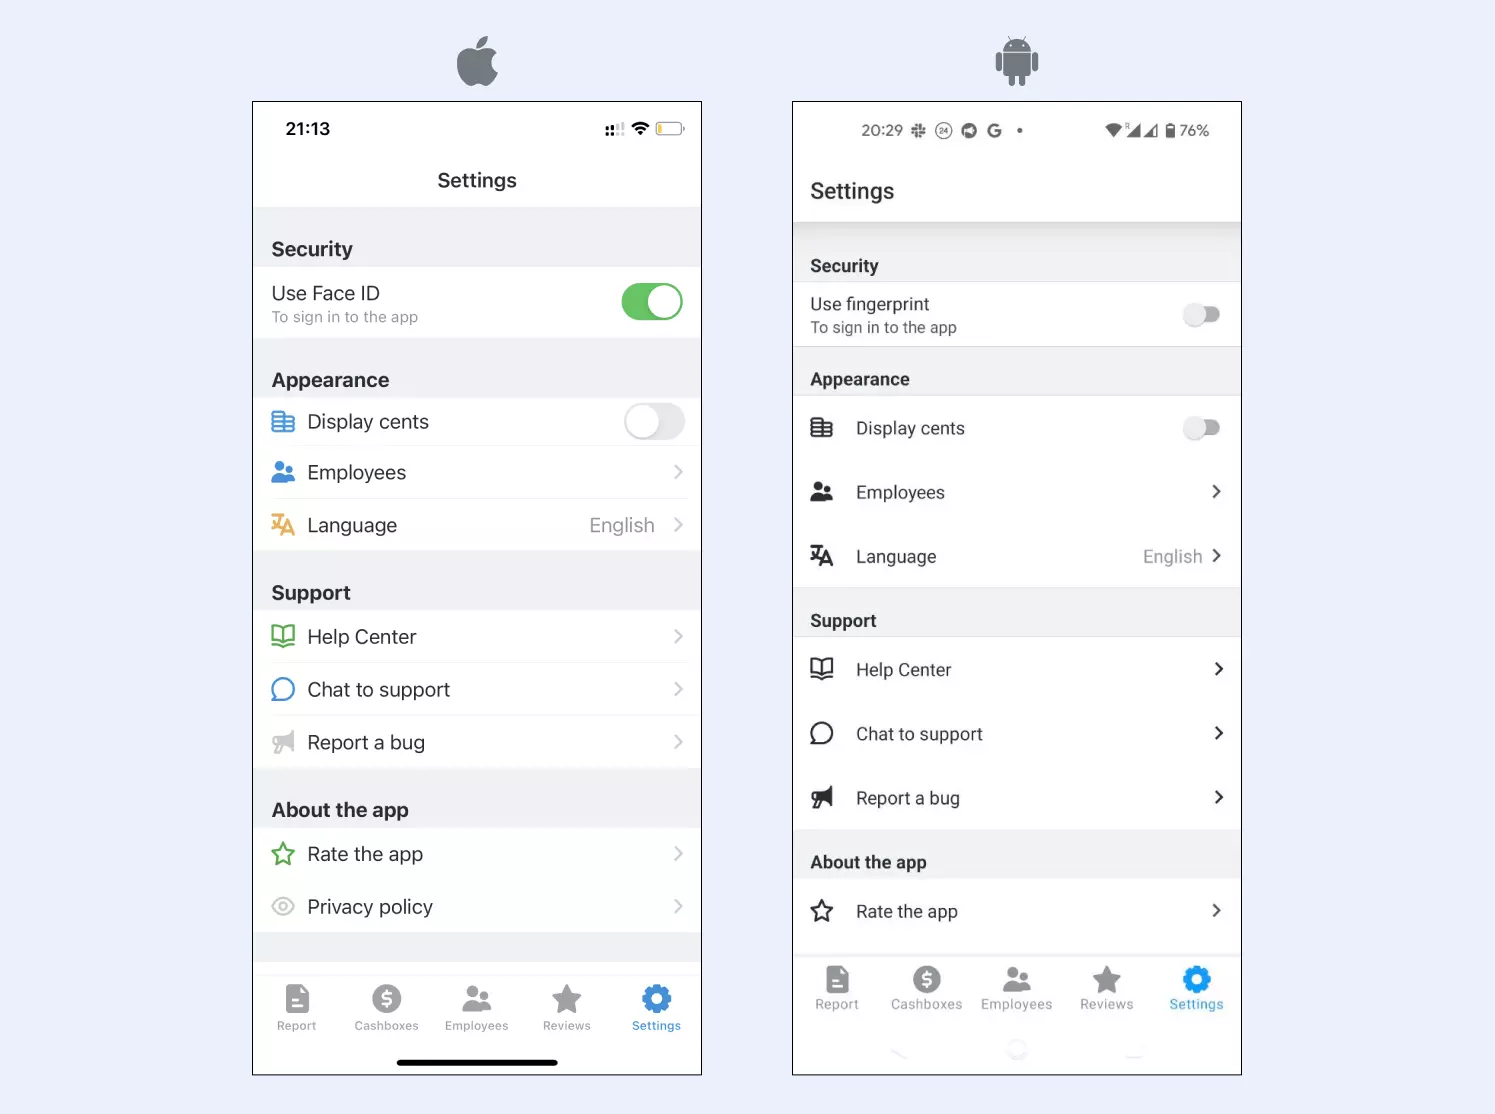 mobile-redesigned-settings-en.webp (39 KB)